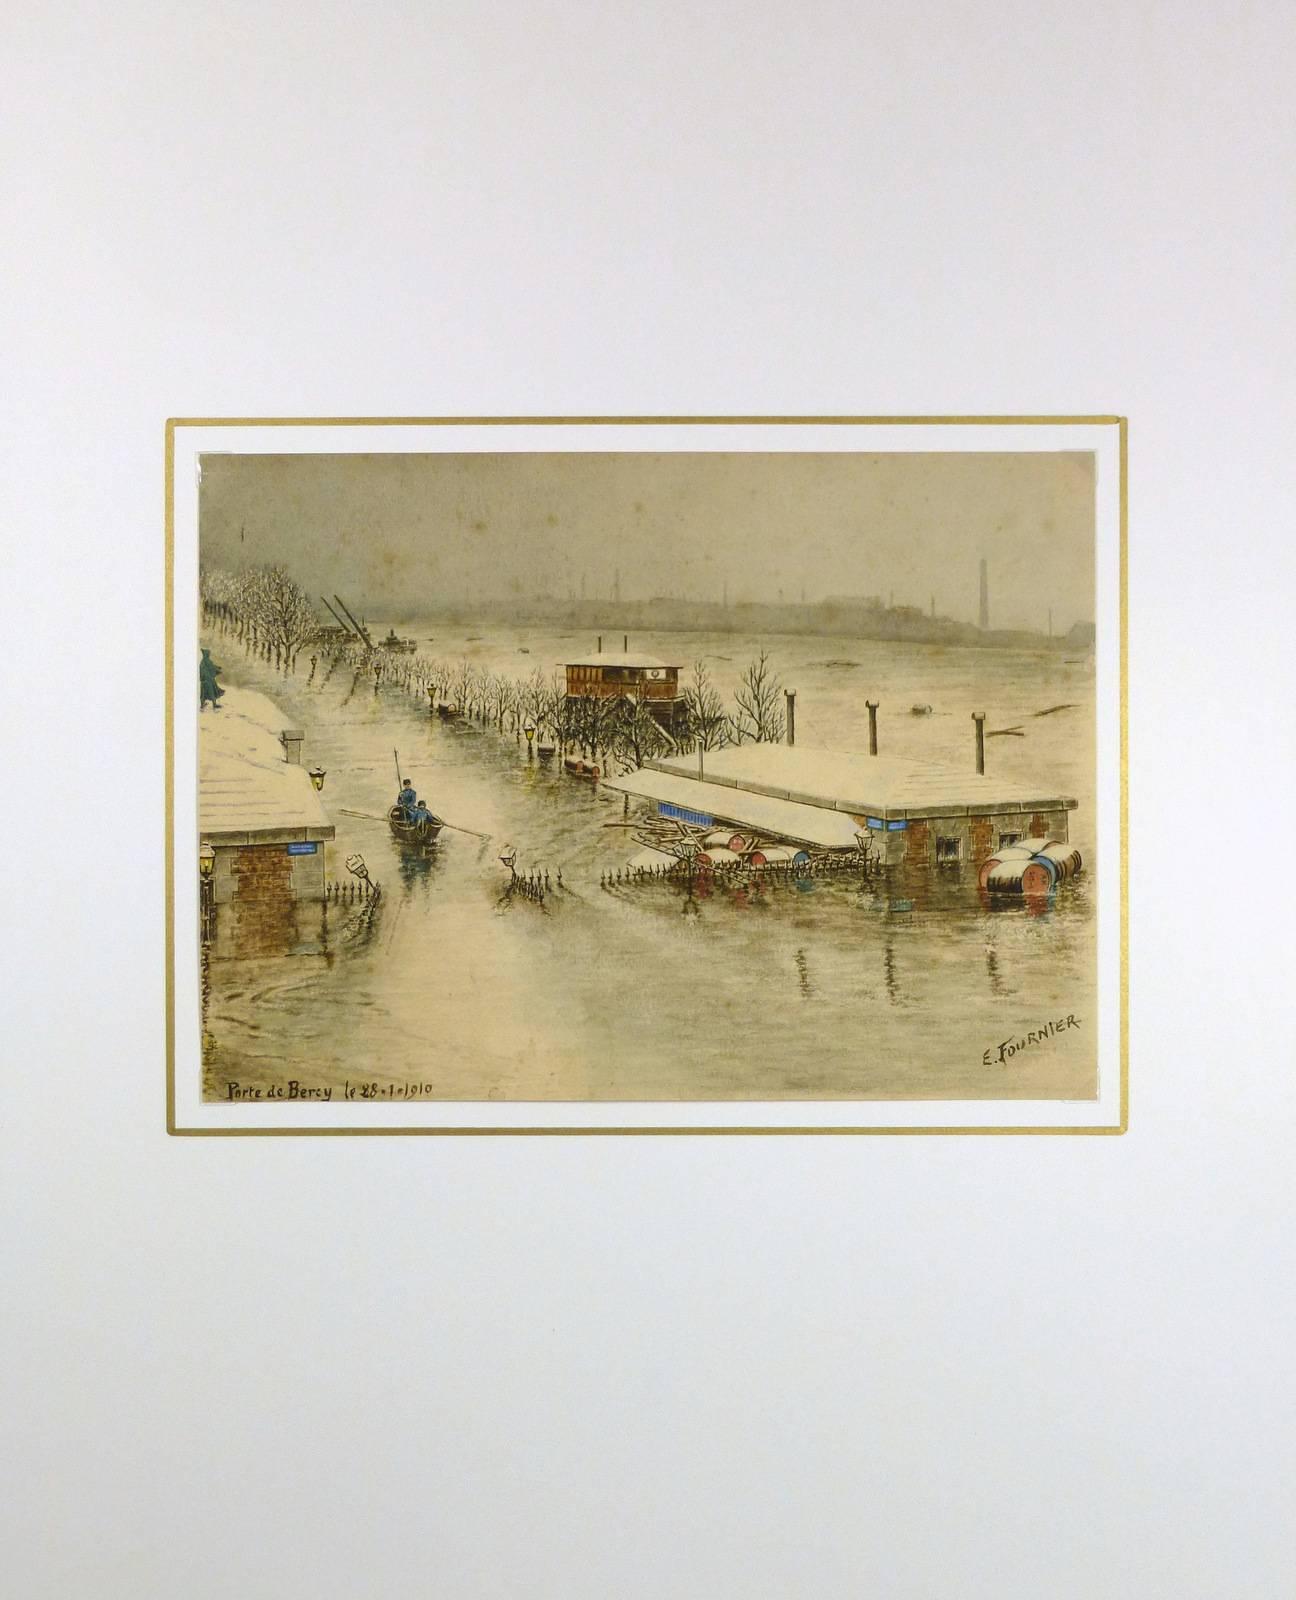 Wunderschönes Aquarell der Überschwemmung an der Porte de Bercy in Paris von dem französischen Künstler E. Fournier, 1910. Signiert unten rechts.  

Originalkunstwerk auf Papier auf einem weißen Passepartout mit Goldrand. Die Matte passt in einen